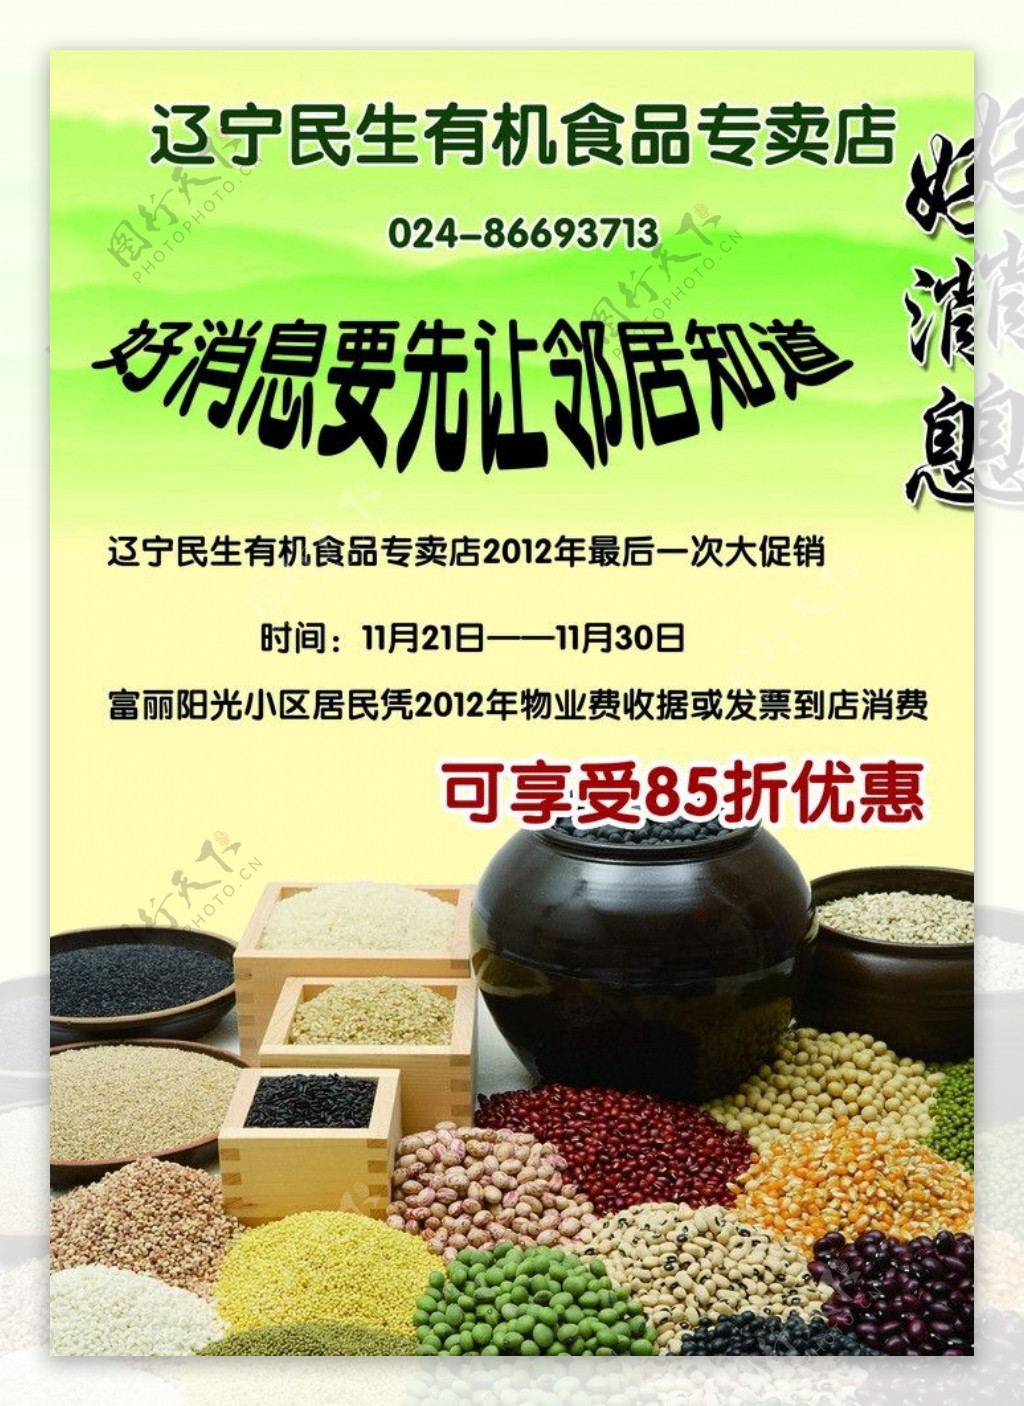 企业活动传单DM单五谷杂粮宣传海报图片